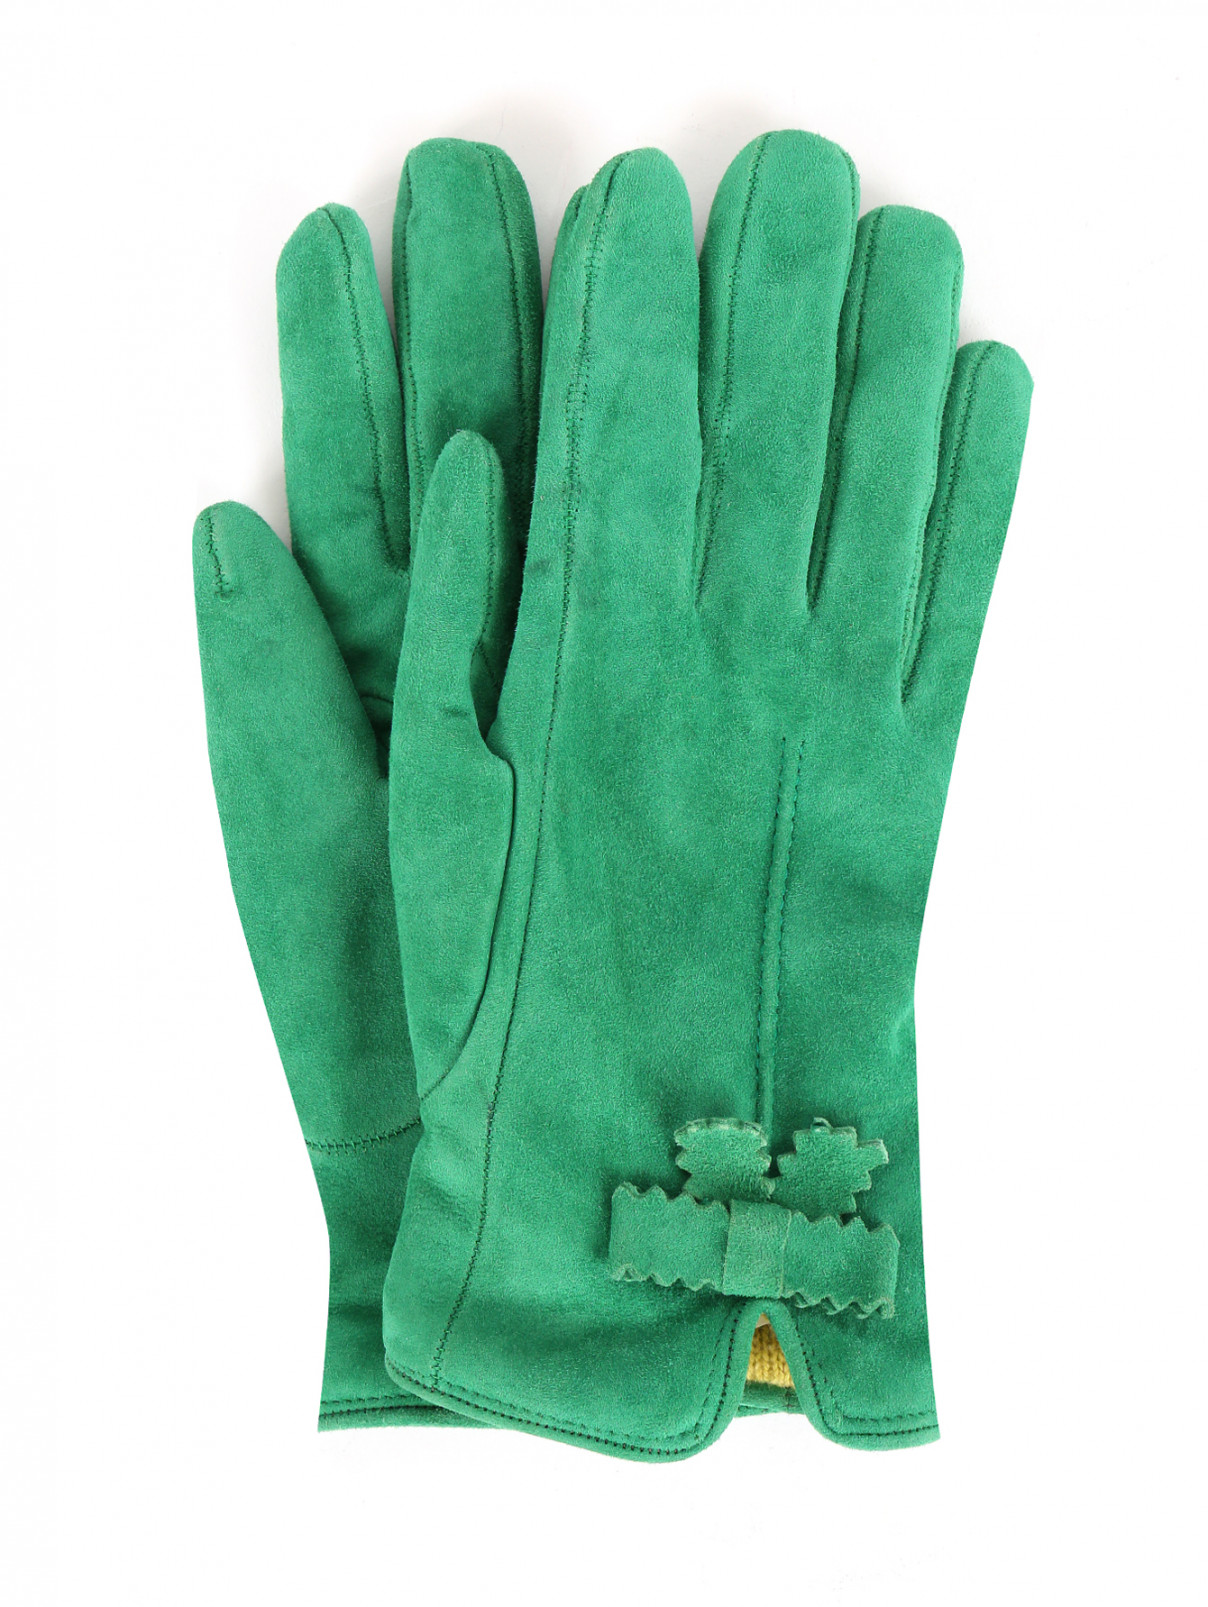 Перчатки из замши с бантиком MiMiSol  –  Общий вид  – Цвет:  Зеленый